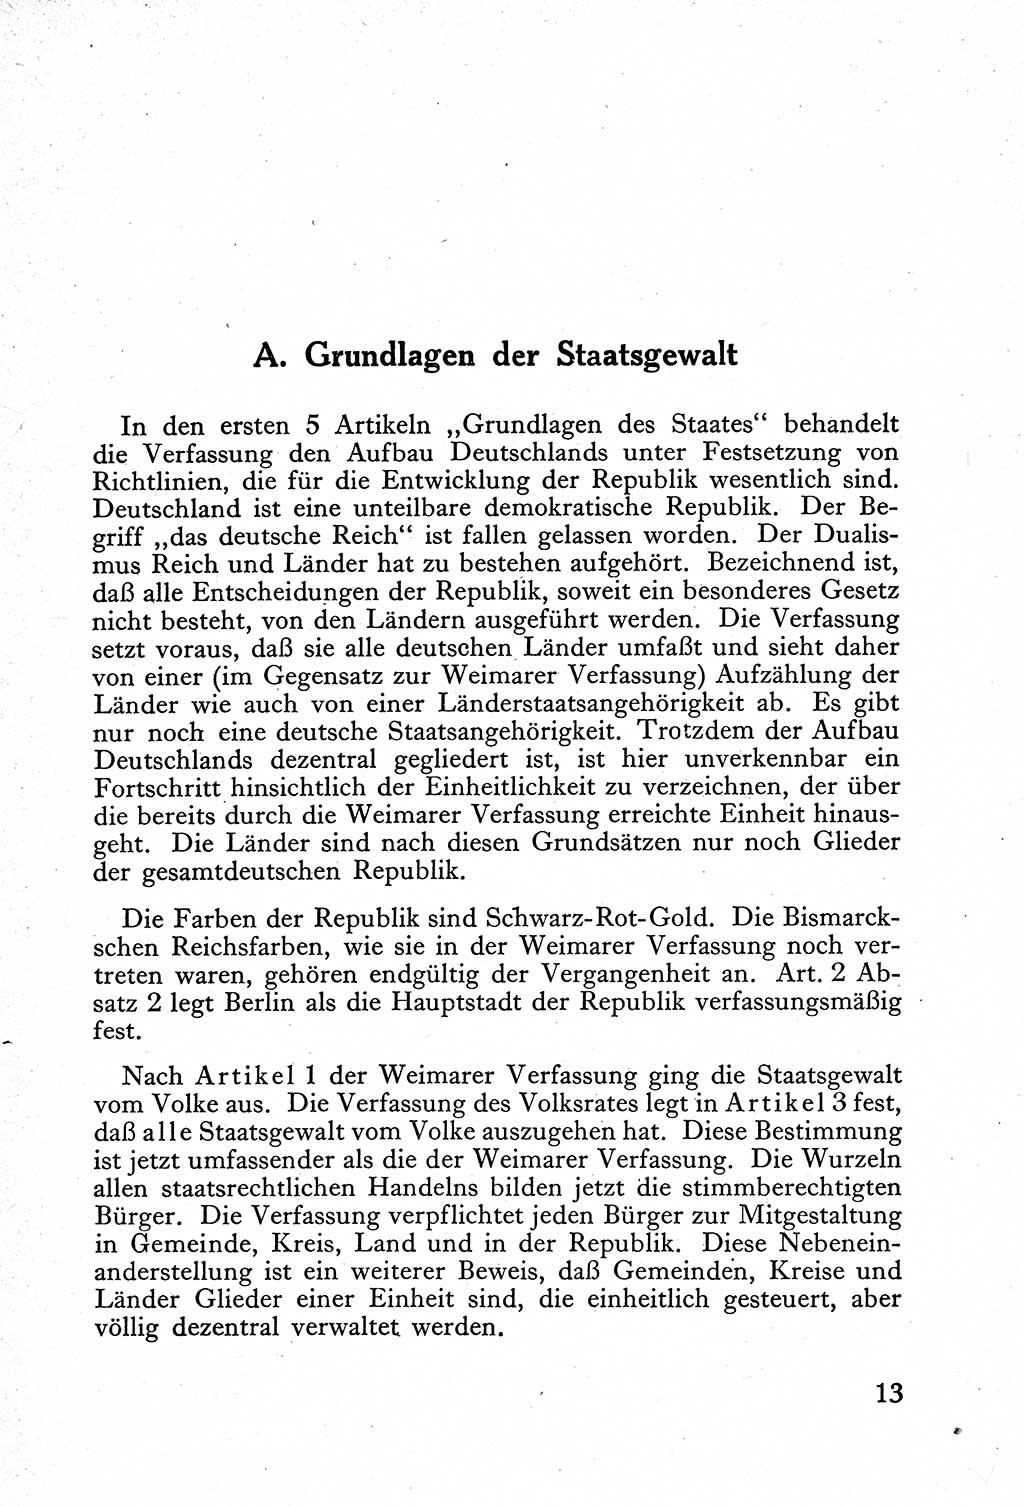 Verfassung der Deutschen Demokratischen Republik (DDR) mit einer Einleitung von Karl Steinhoff 1949, Seite 13 (Verf. DDR Einl. K. S. 1949, S. 13)